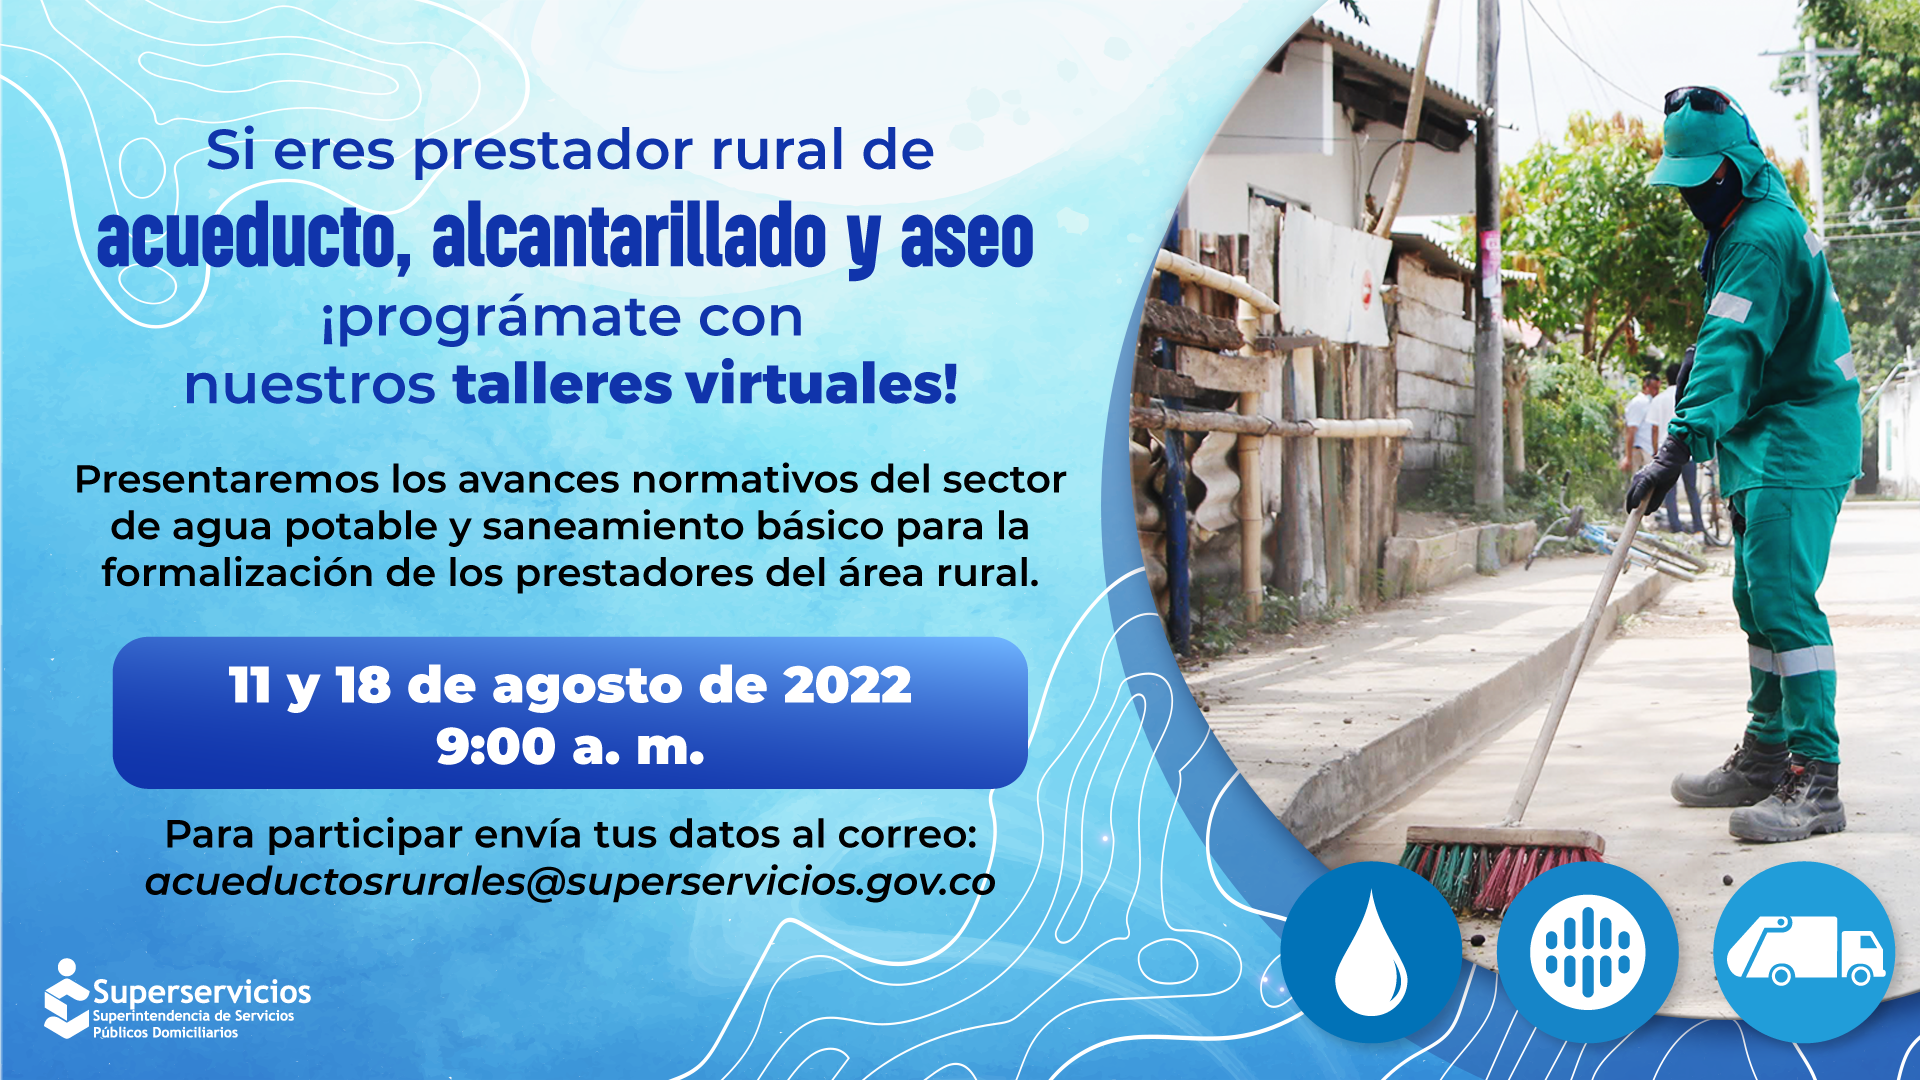 Taller virtual para prestadores rurales de Acueducto, Alcantarillado y Aseo, el 11 y 18 de agosto
